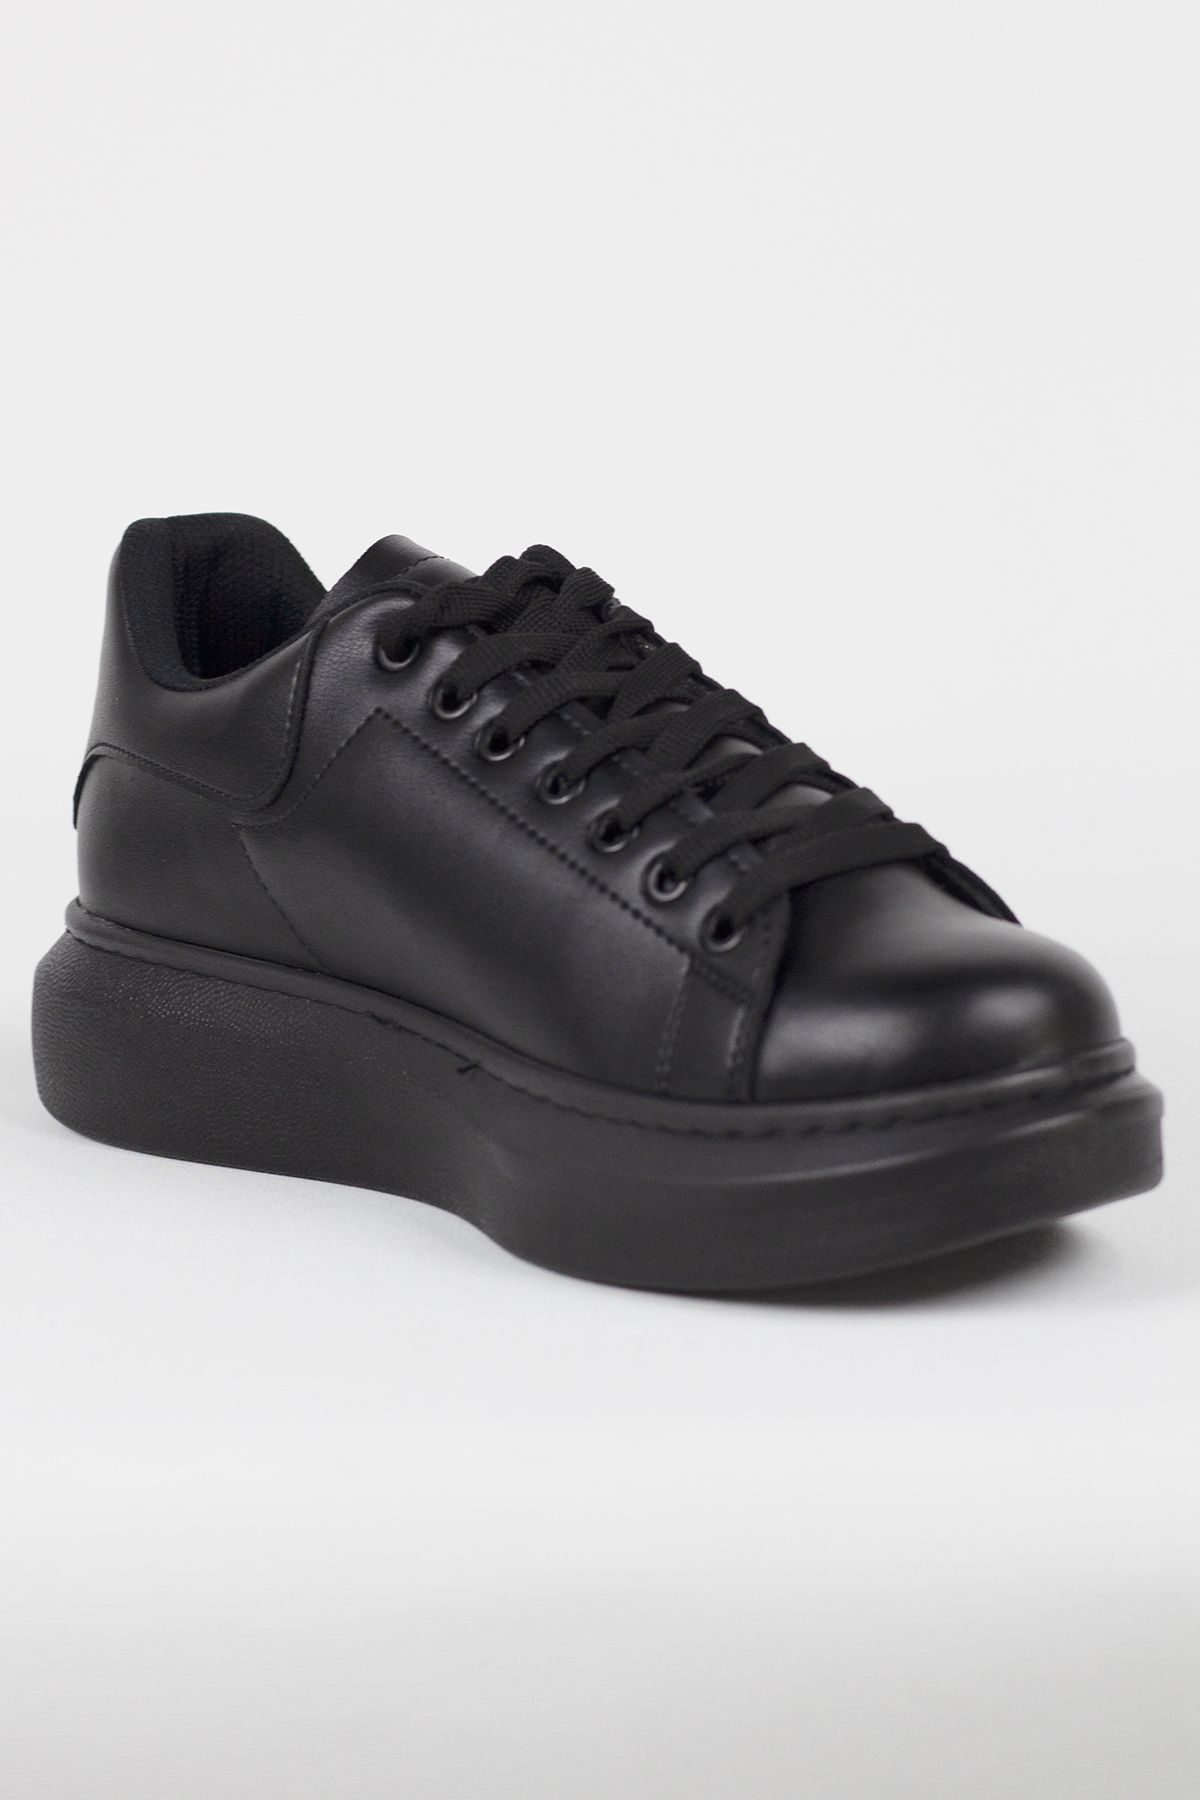 Rainon Store Siyah Deri Bağcıklı Yüksek Tabanlı Erkek Sneaker